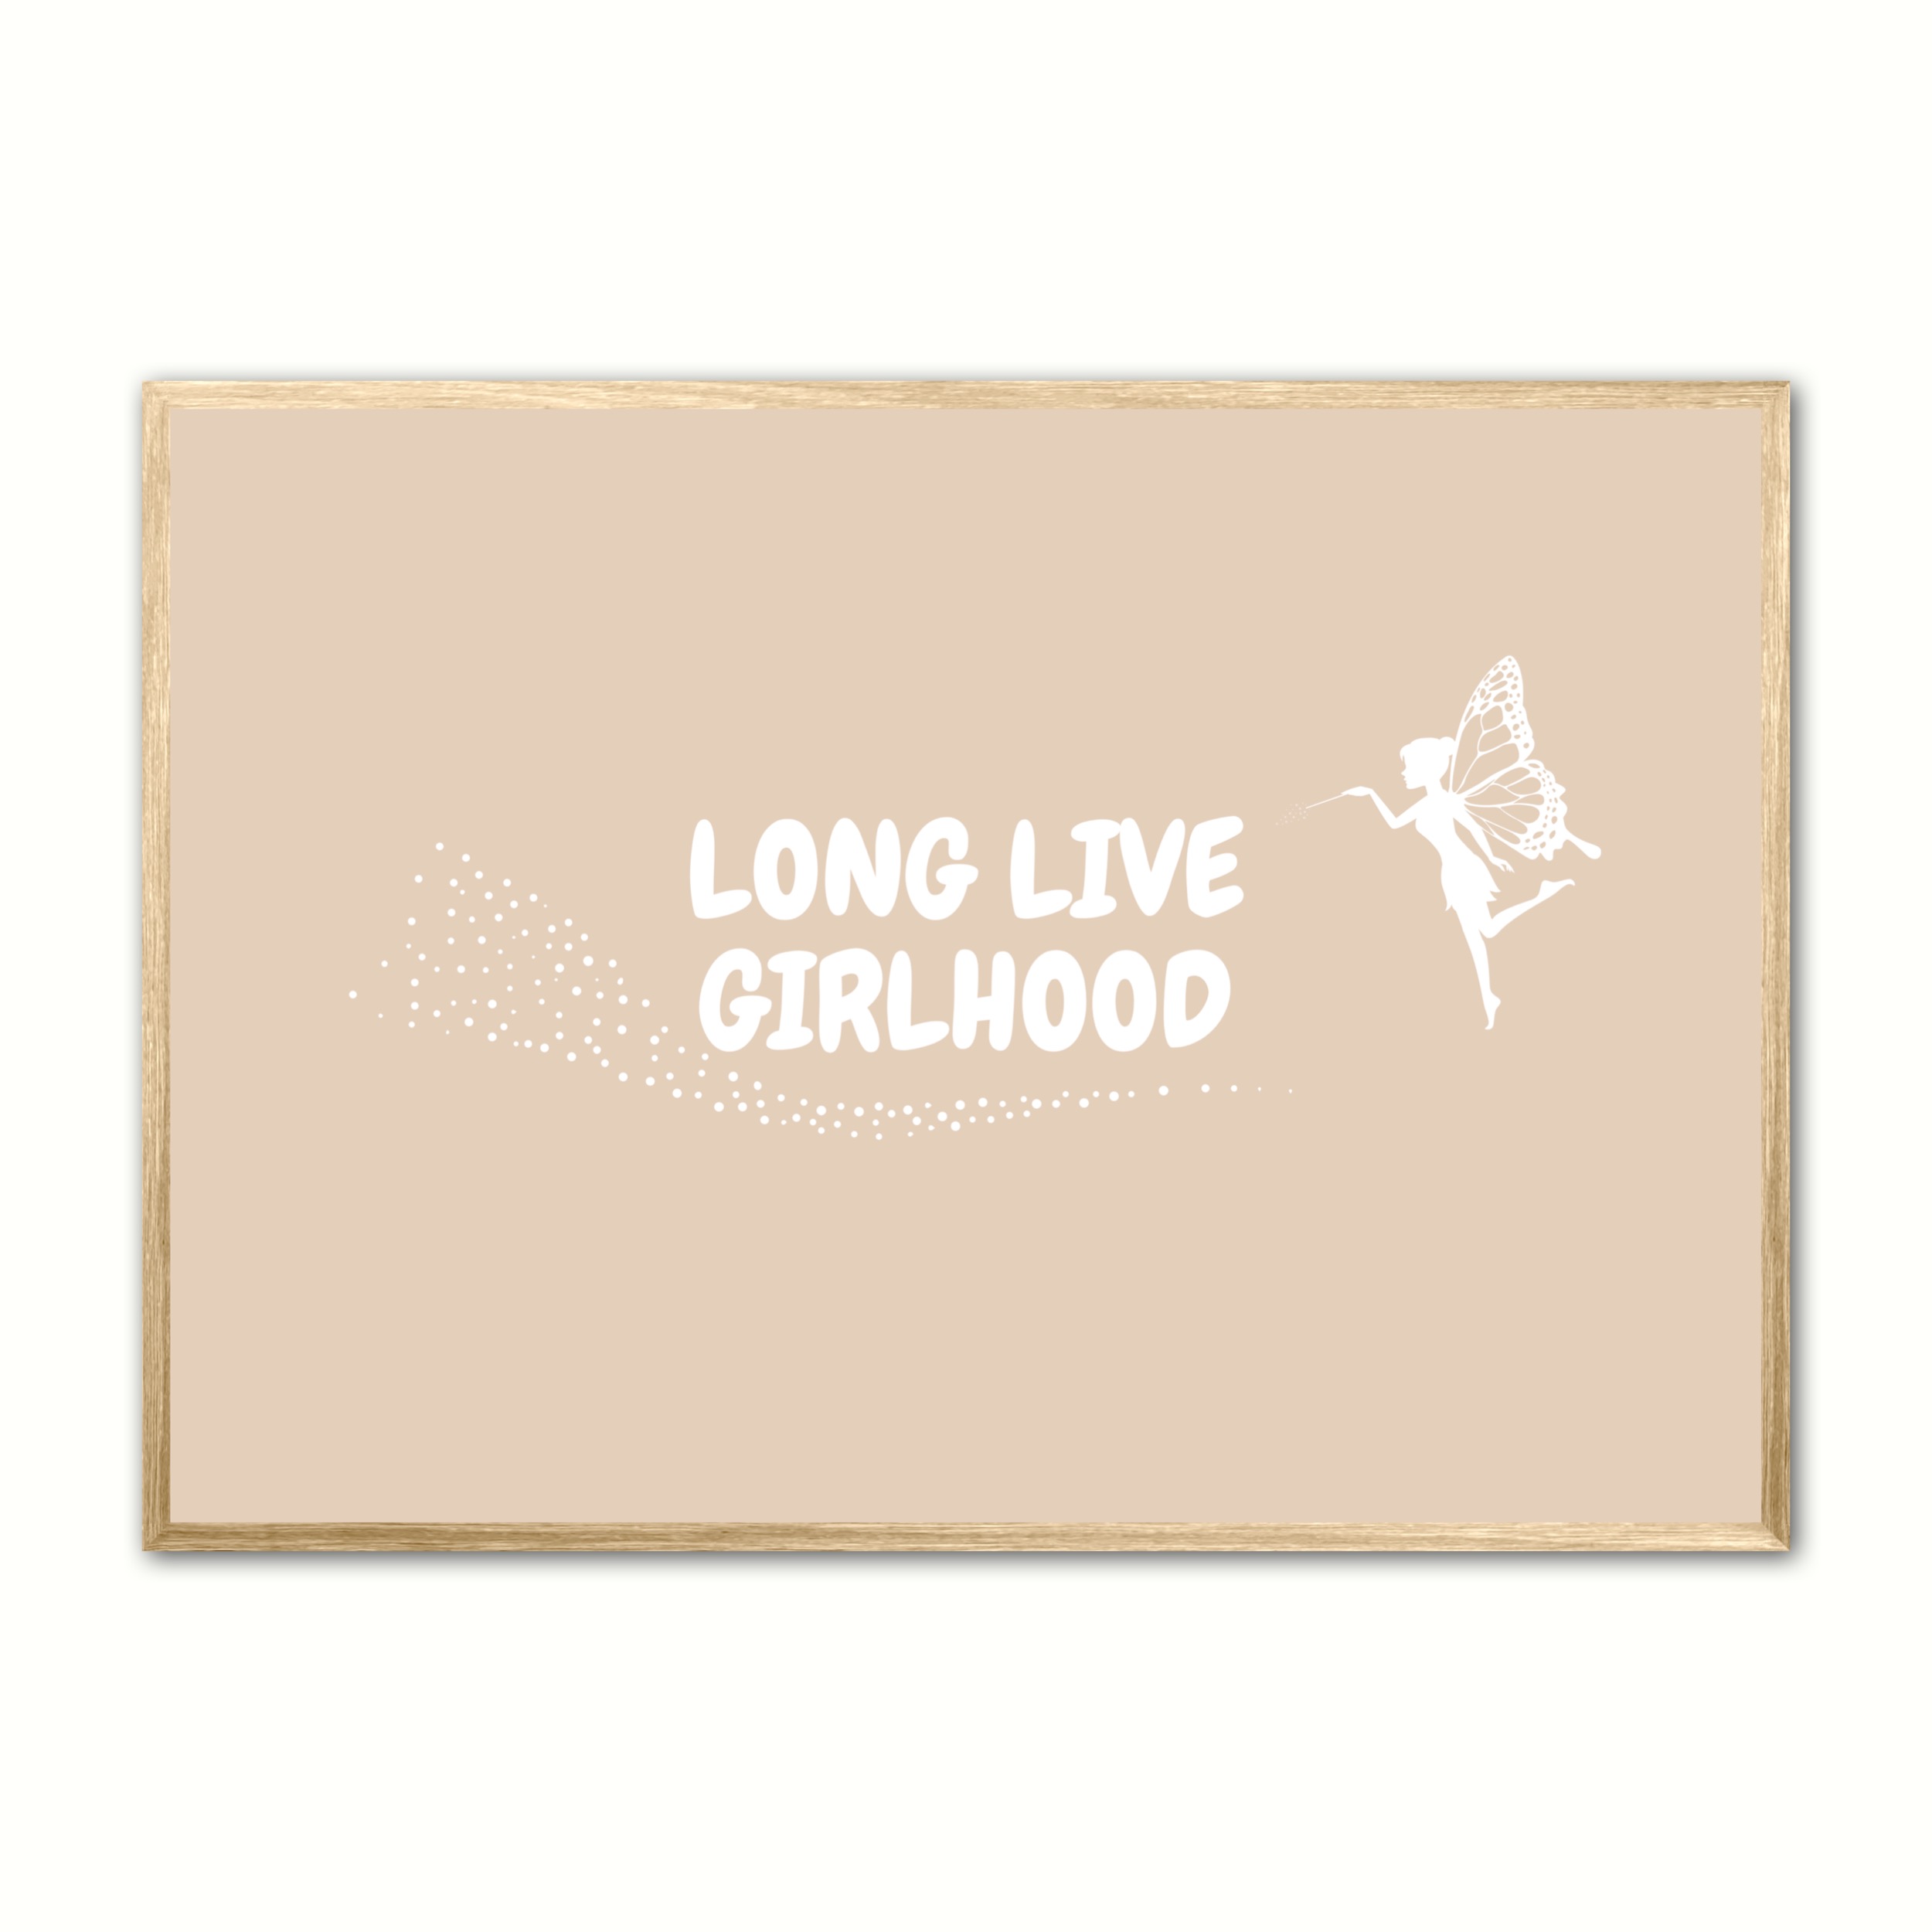 Se Plakat med Long Live Girlhood - Sand 50 x 70 cm (B2) hos Nyplakat.dk